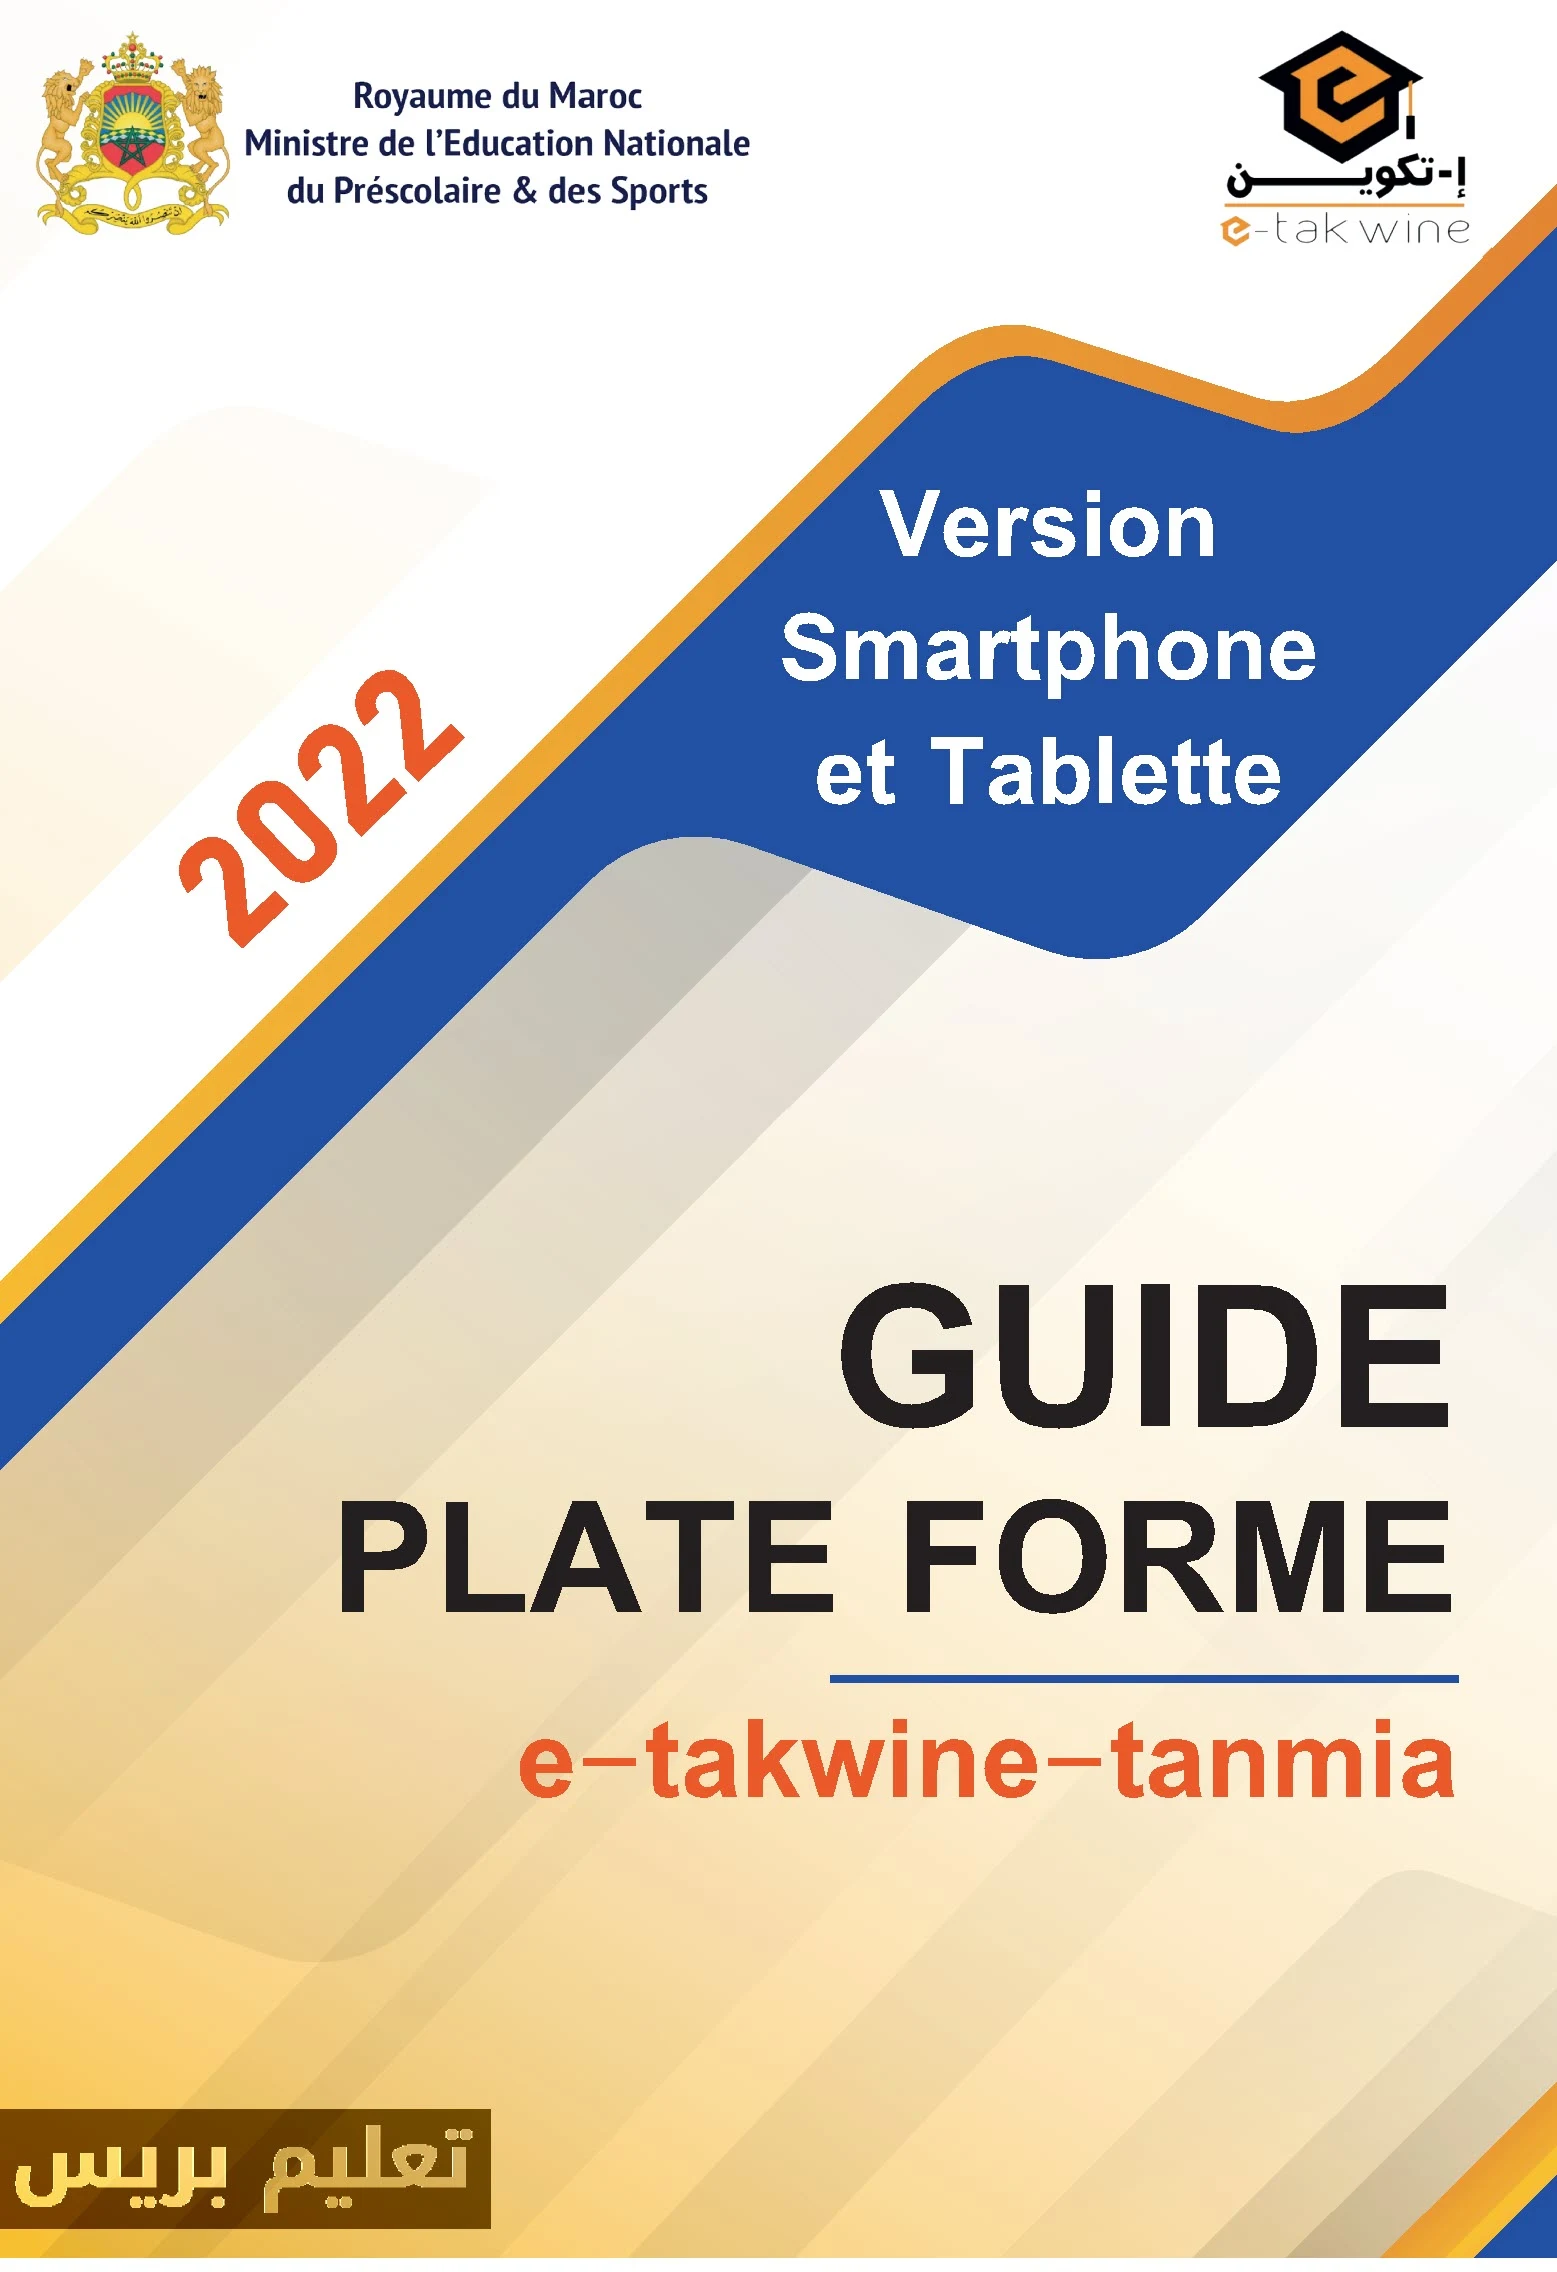 دليل التسجيل بمنصة التكوين" تكوين تنمية" e-takwine-tanmia.men.gov.ma للموسم 2022/2023